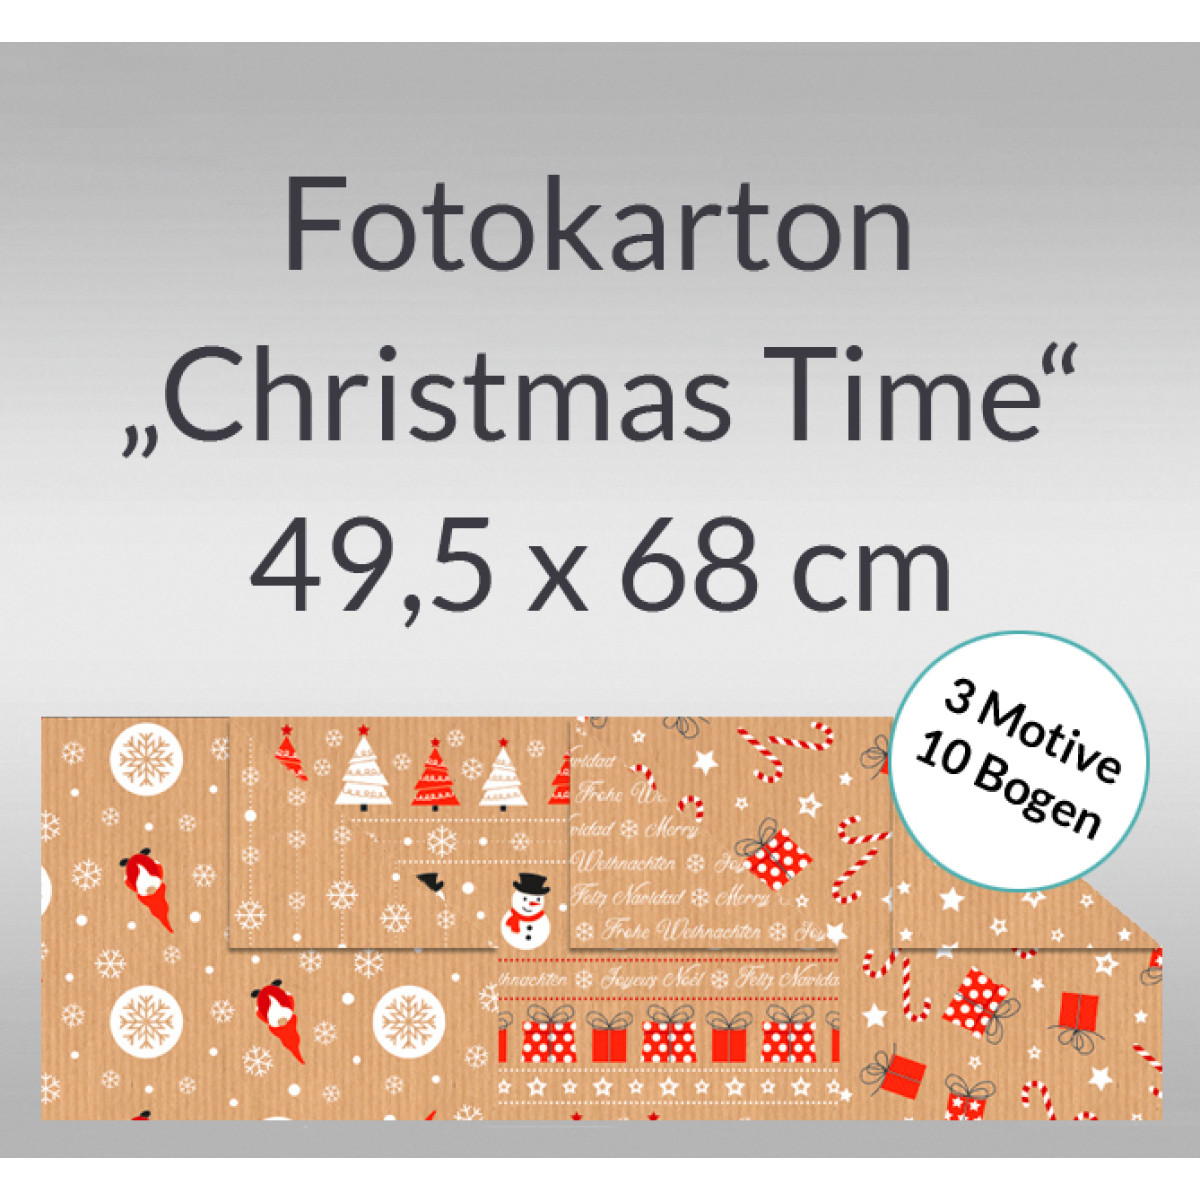 Fotokarton "Christmas Time" 49,5 x 68 cm - 10 Bogen sortiert